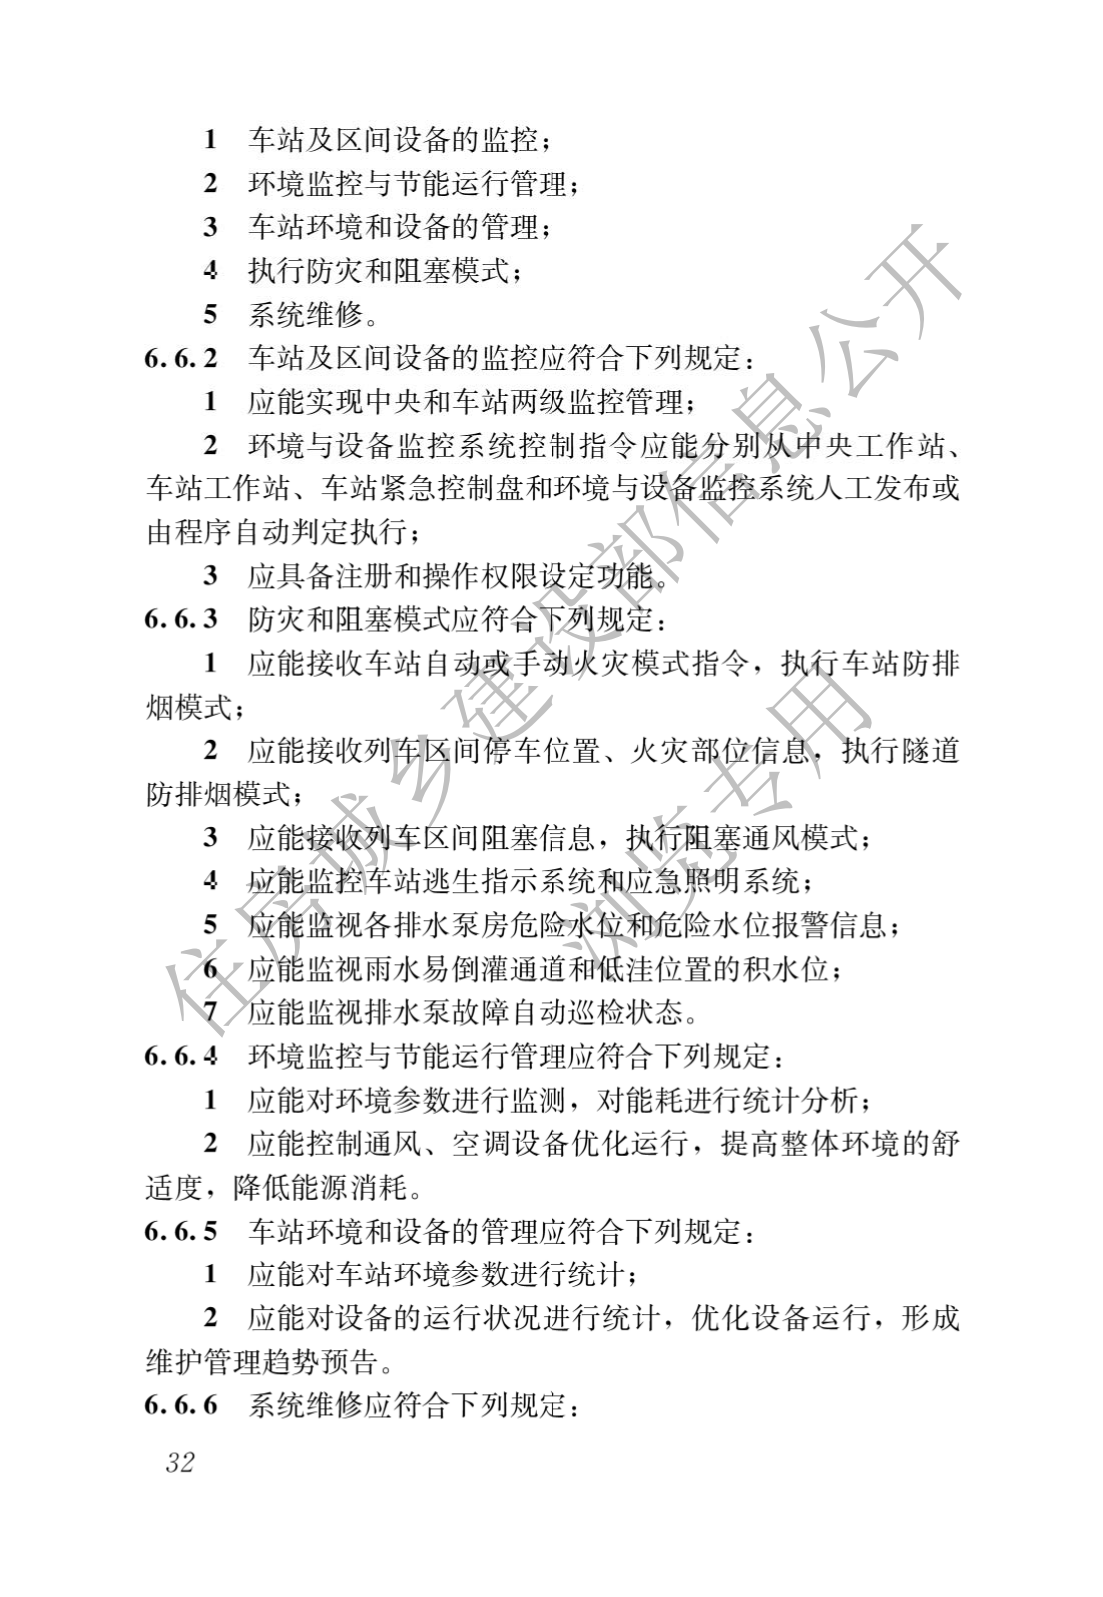 住房和城鄉建設部關于發布國家标準 《城市軌道交通工(gōng)程項目規範》的公告(圖36)